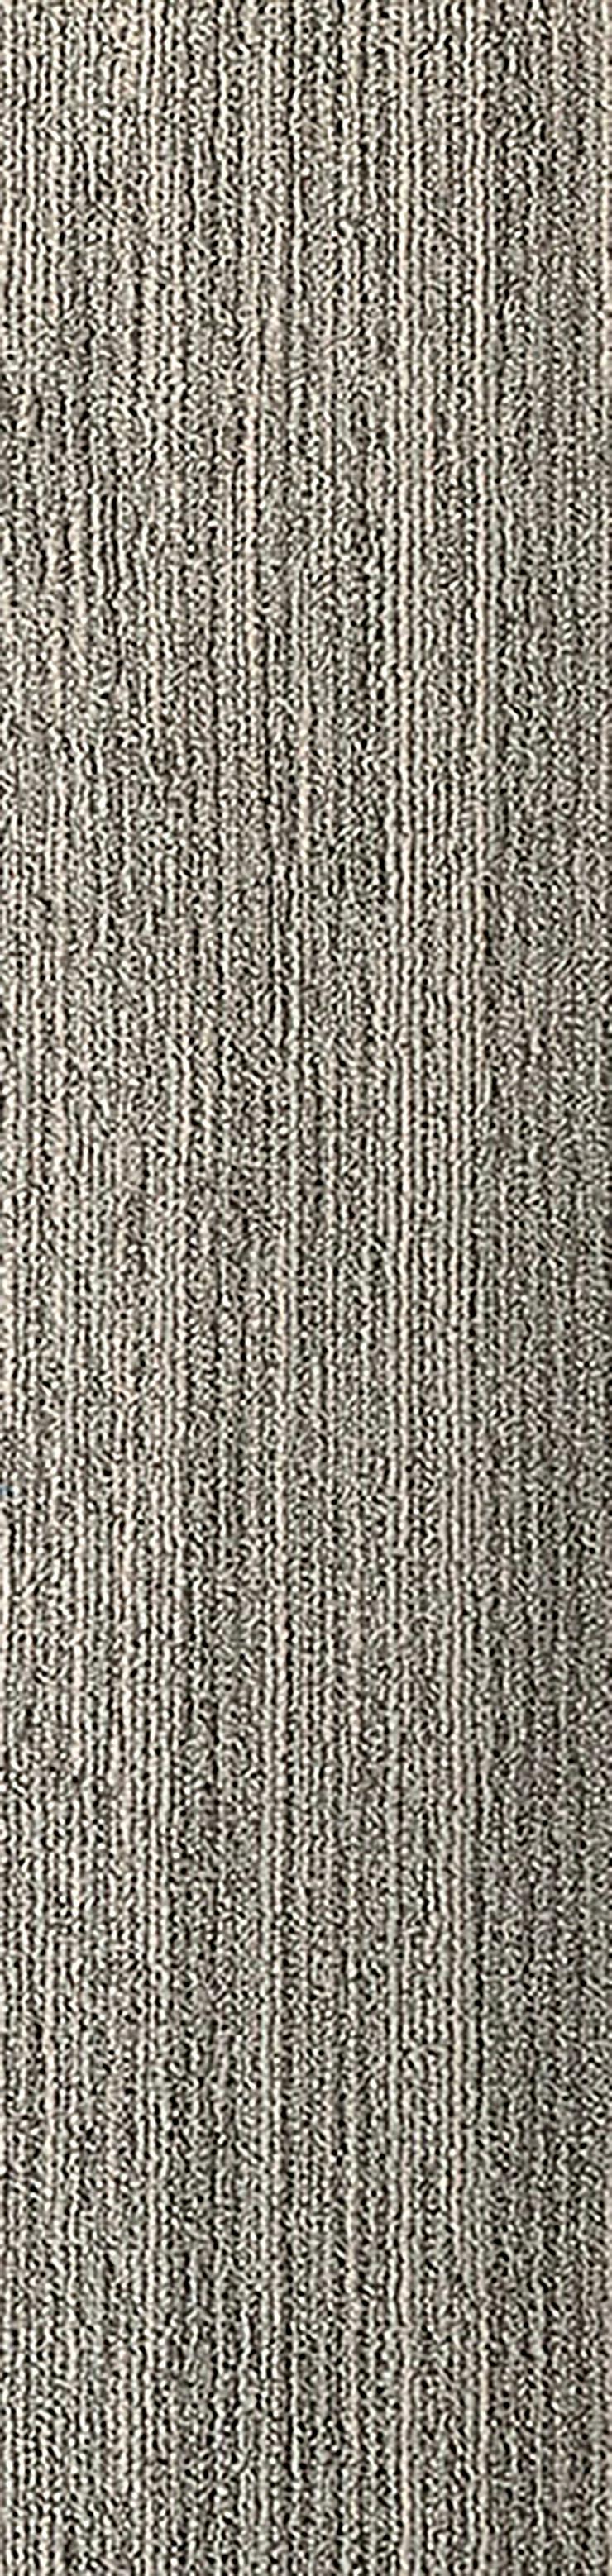 Schöne 'Laminat' Teppichfliesen 25x100cm Sehr Decorativ - Teppiche - Bild 1